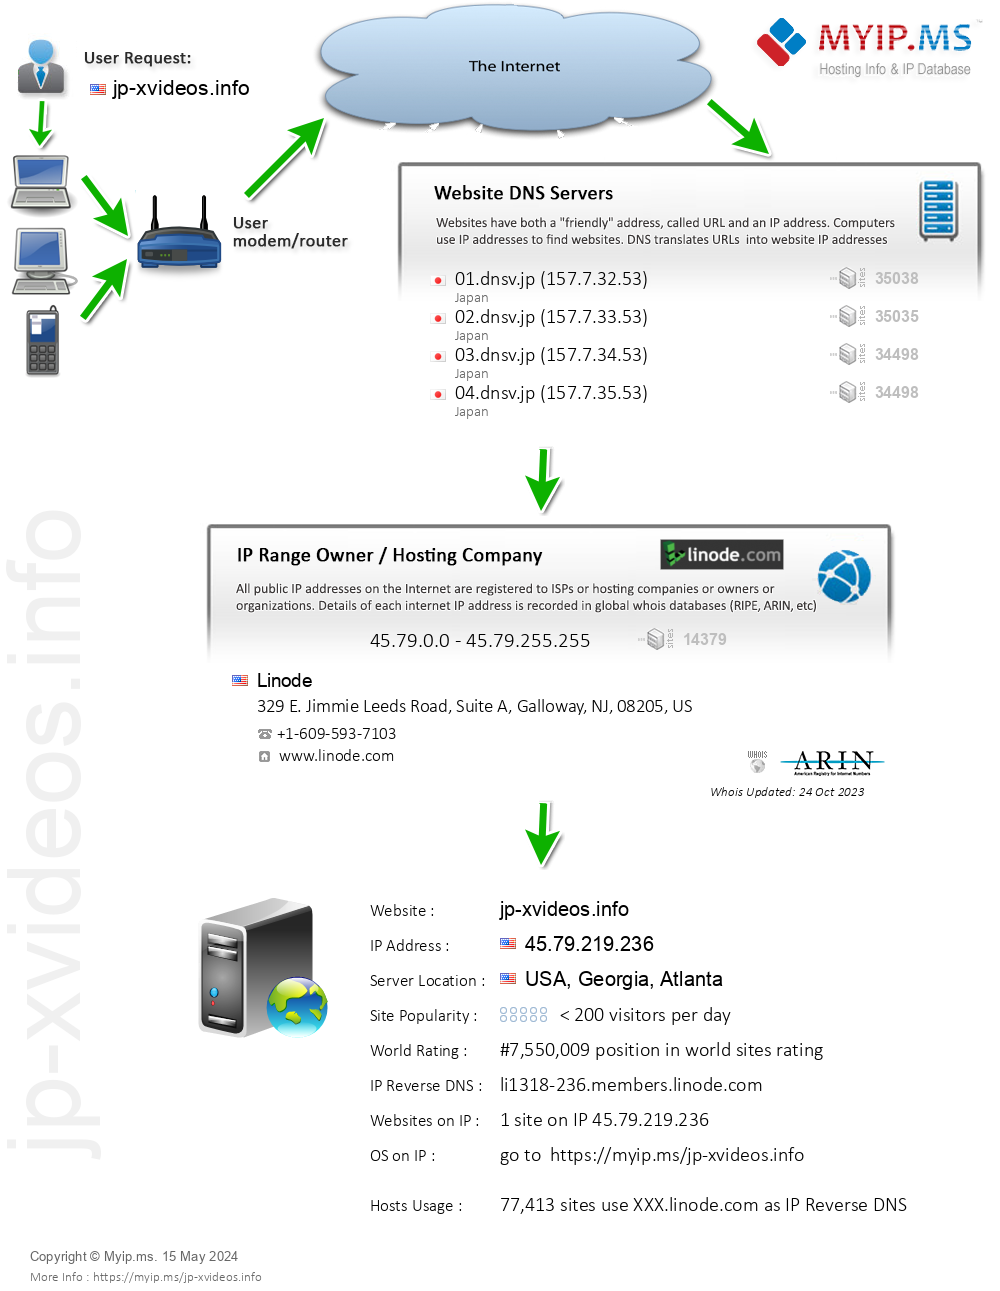 Jp-xvideos.info - Website Hosting Visual IP Diagram